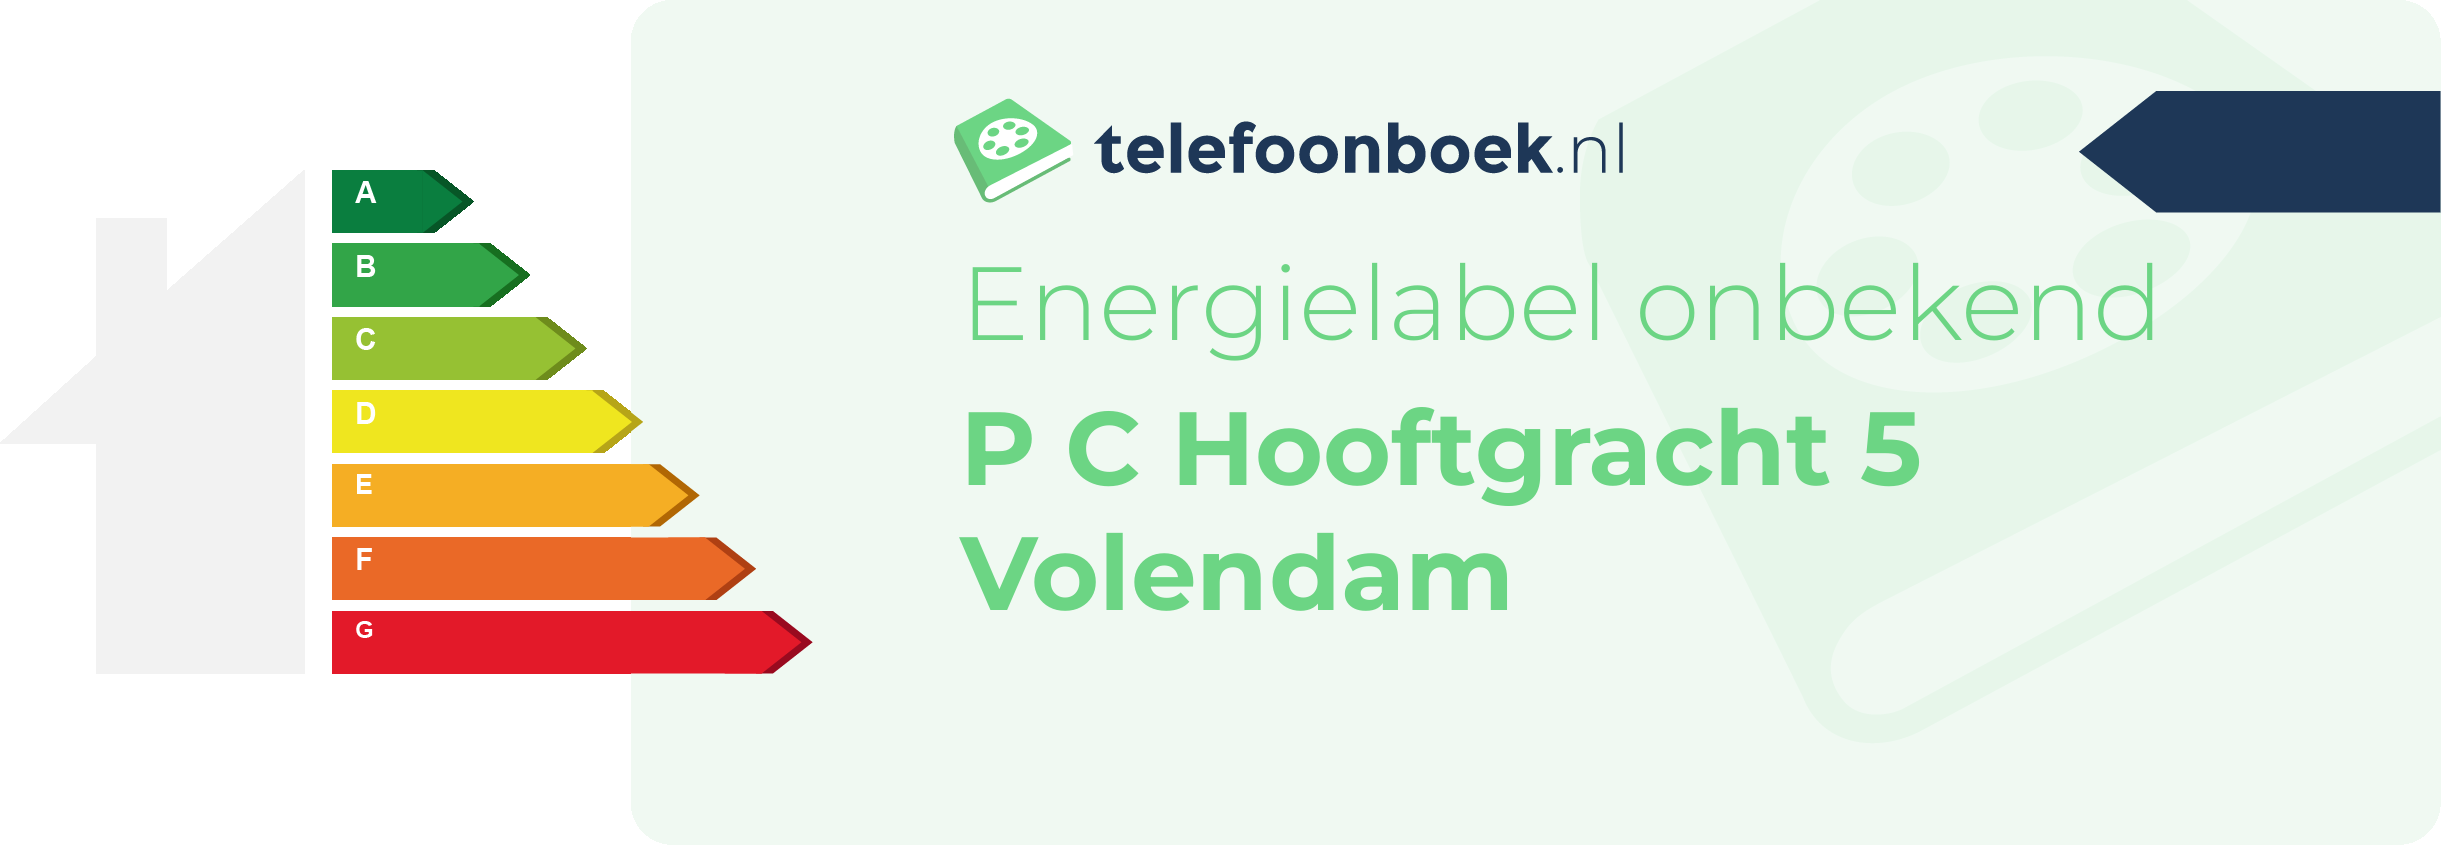 Energielabel P C Hooftgracht 5 Volendam